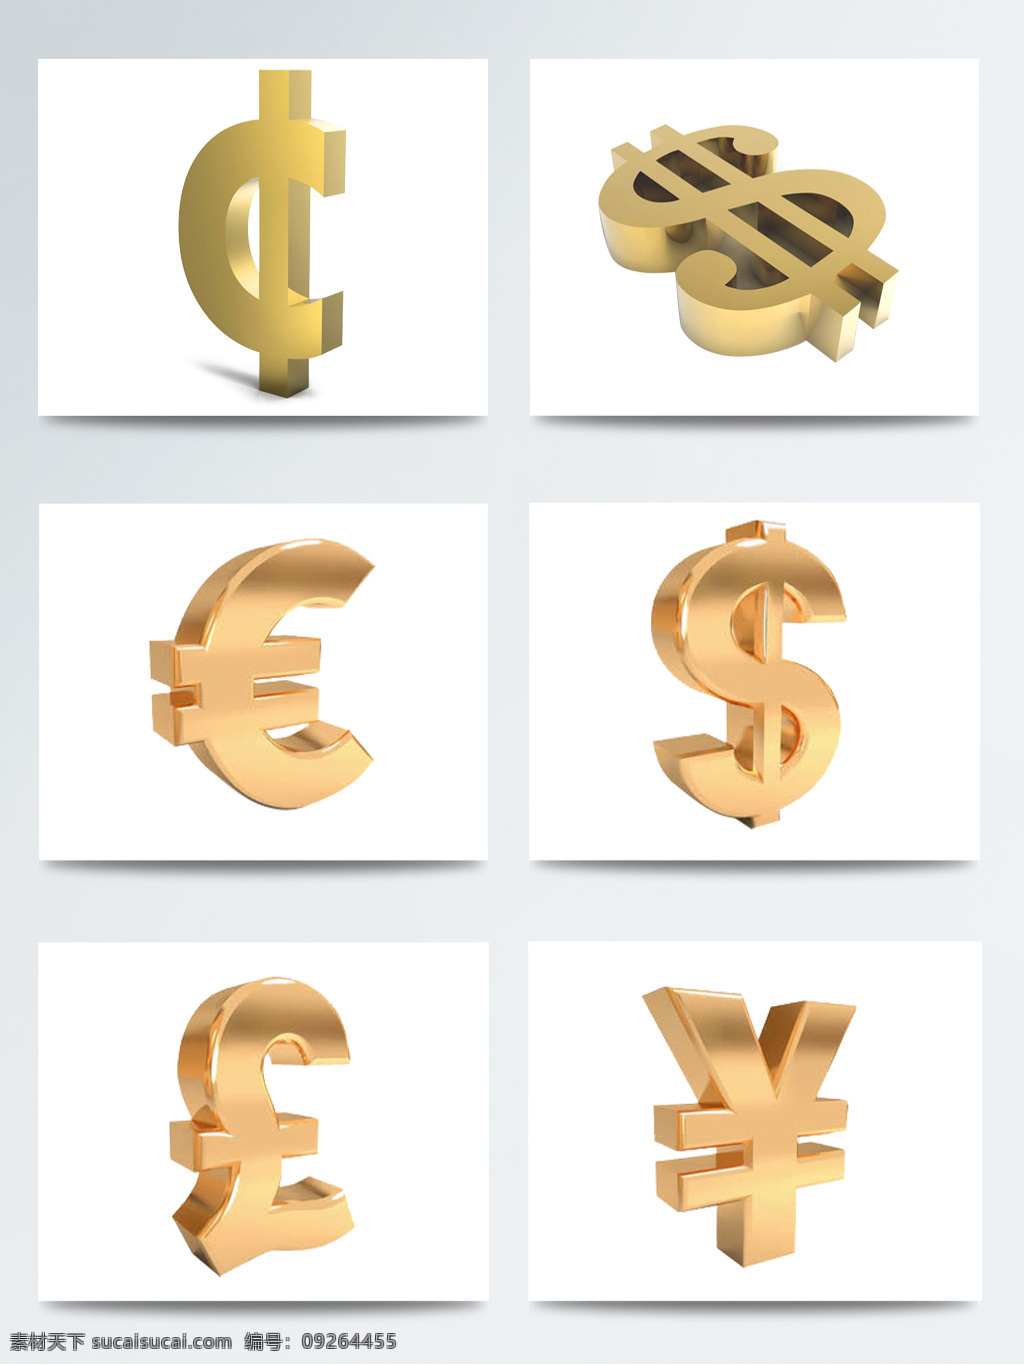 3d 立体 金色 货币 符号 图标 电商商务 电子货币 货币交换 货币流通 货币图标 货币字符 金融货币 金色货币